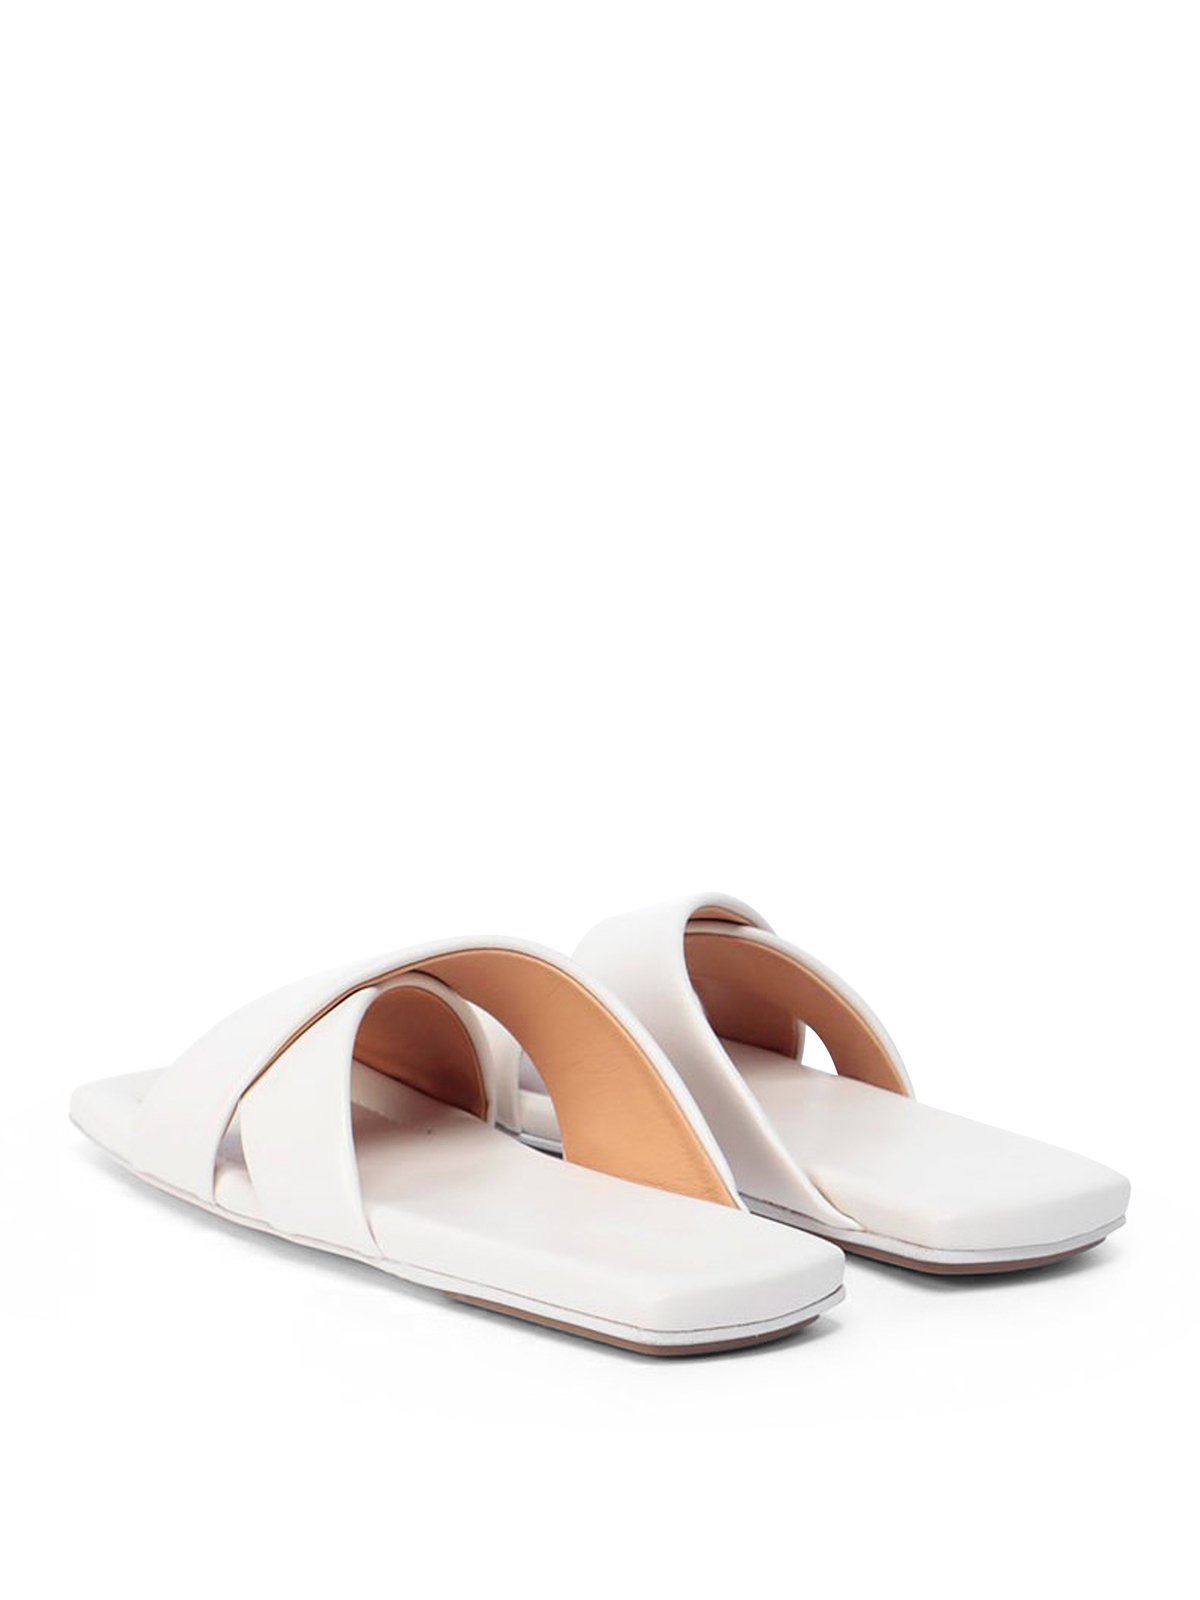 Sandals Marsèll - Tavola sandals - MW6803180 | Shop online at iKRIX